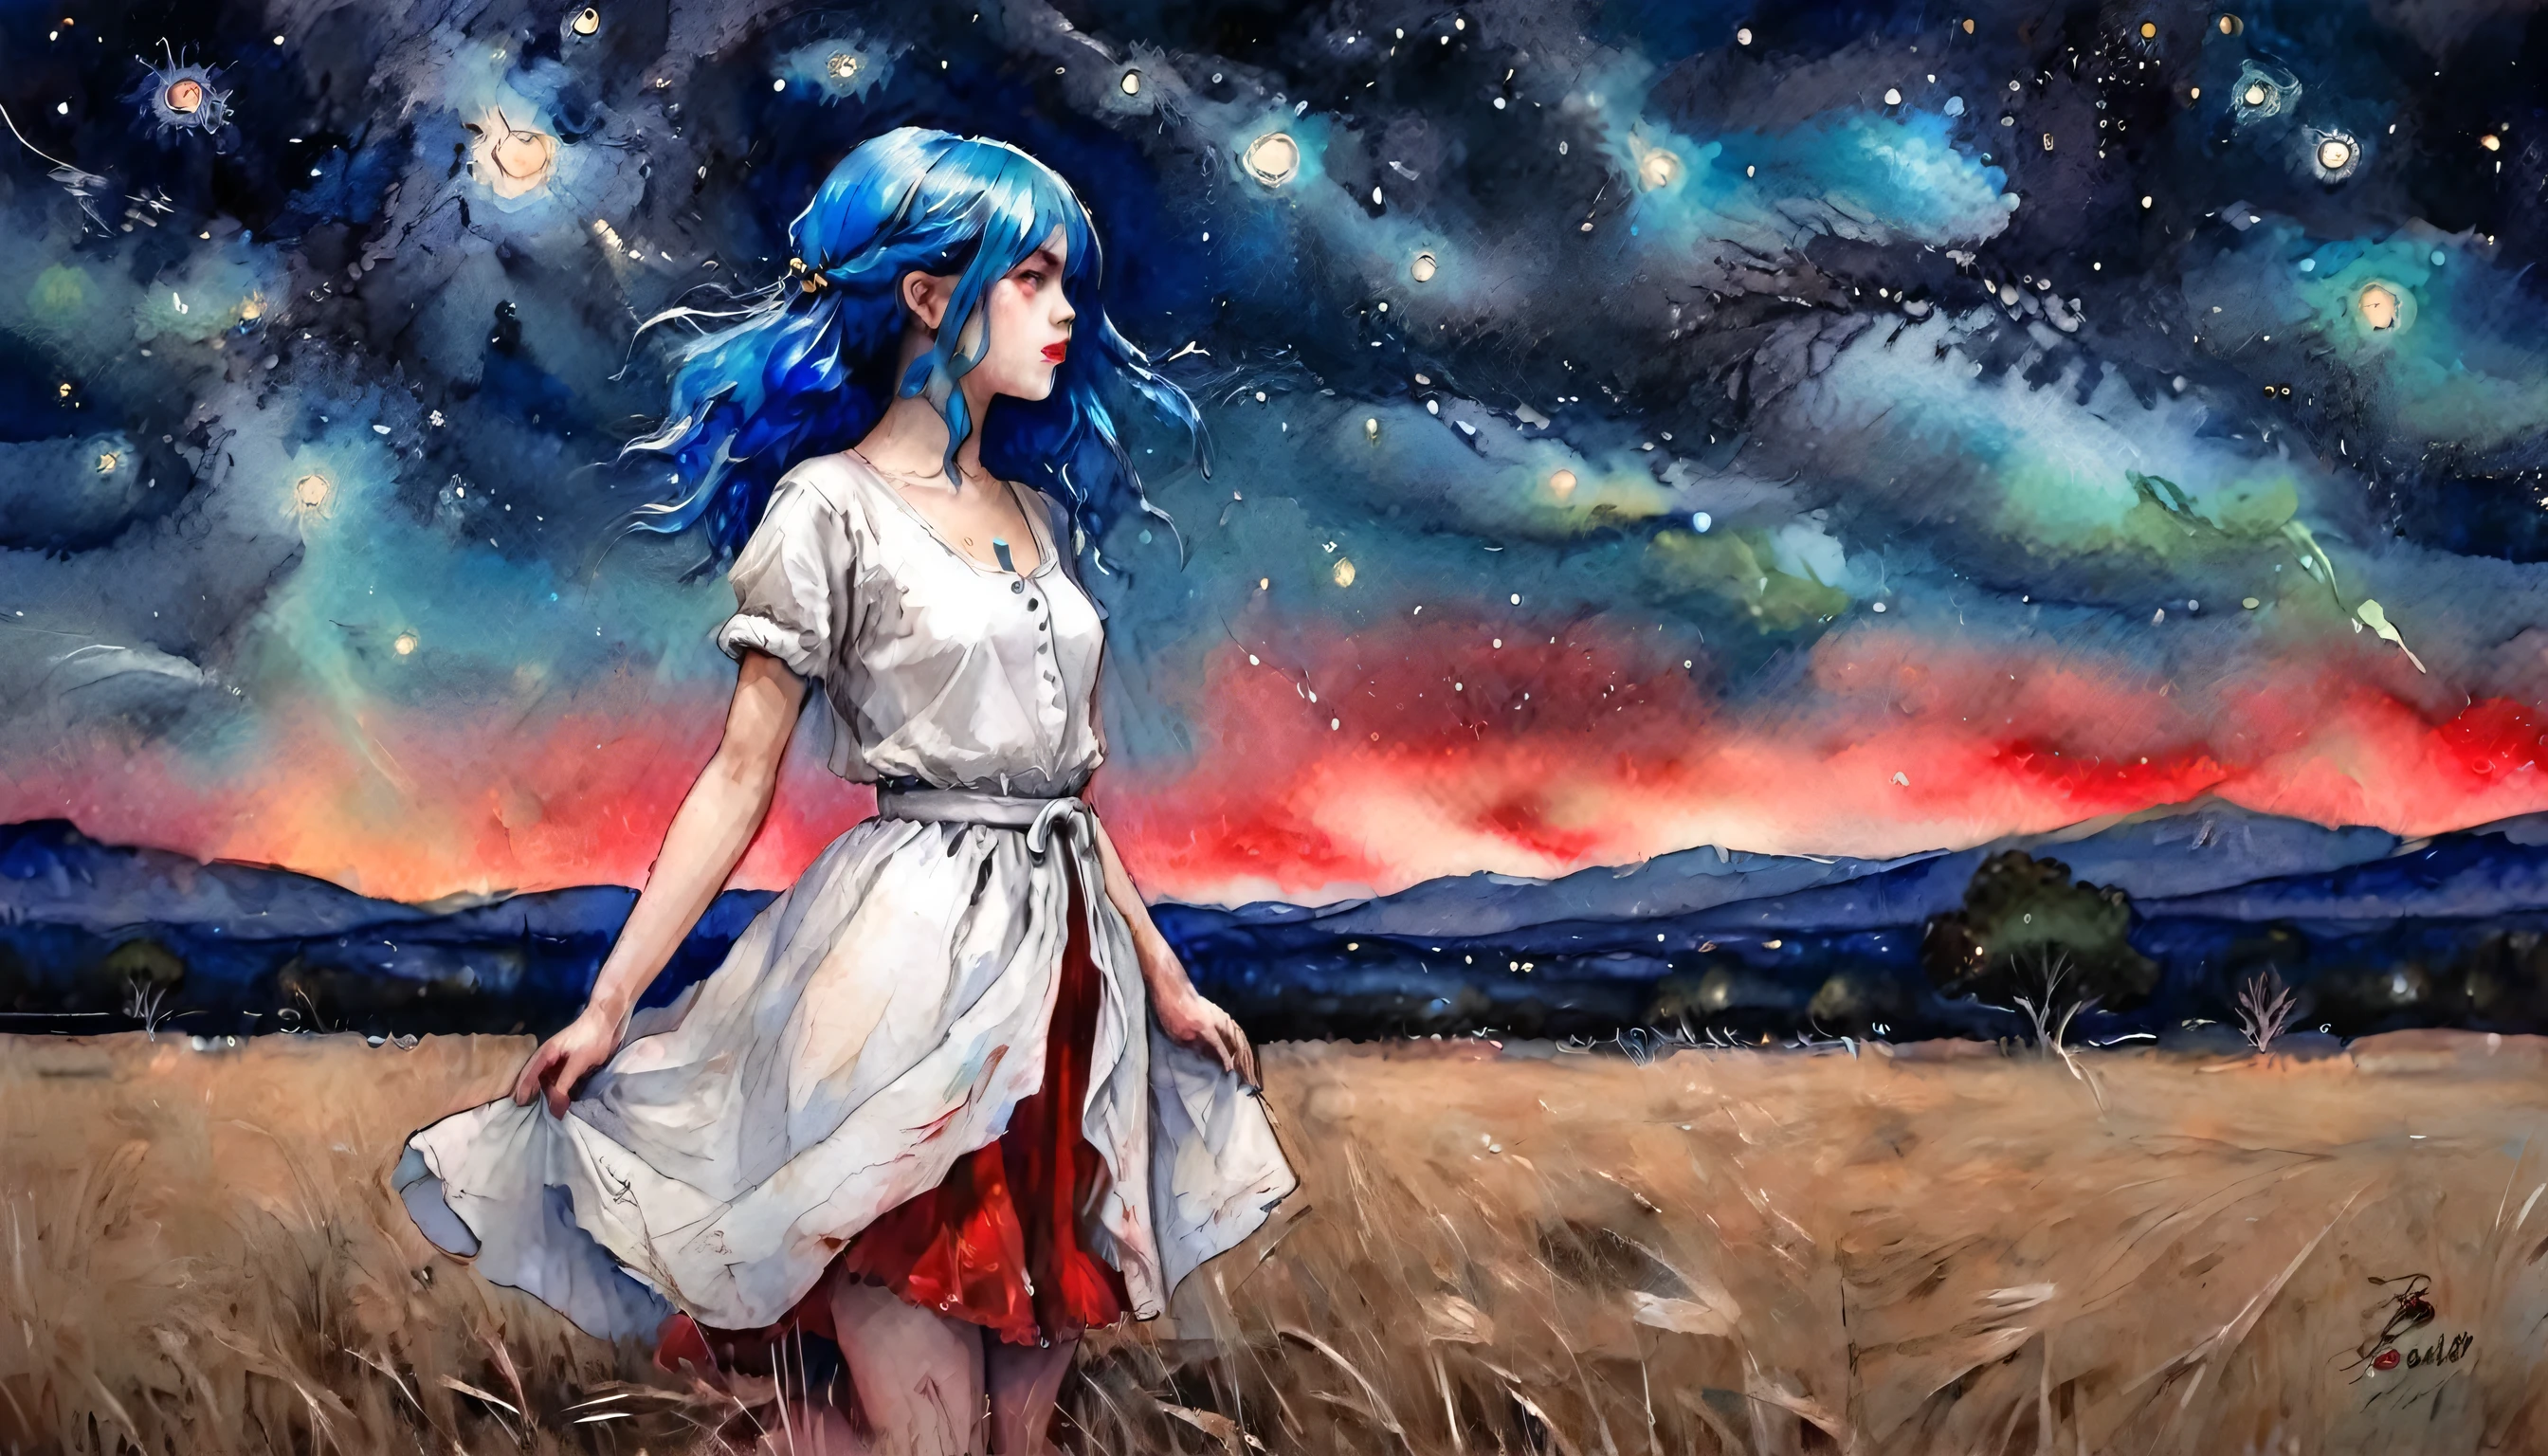 一個女孩, 藍頭髮, 穿着浅白色上衣和红色裙子, 放置在空旷的地方, 夜晚, 詳細的星空, 美妙的藝術, 鮮豔的色彩, 水彩